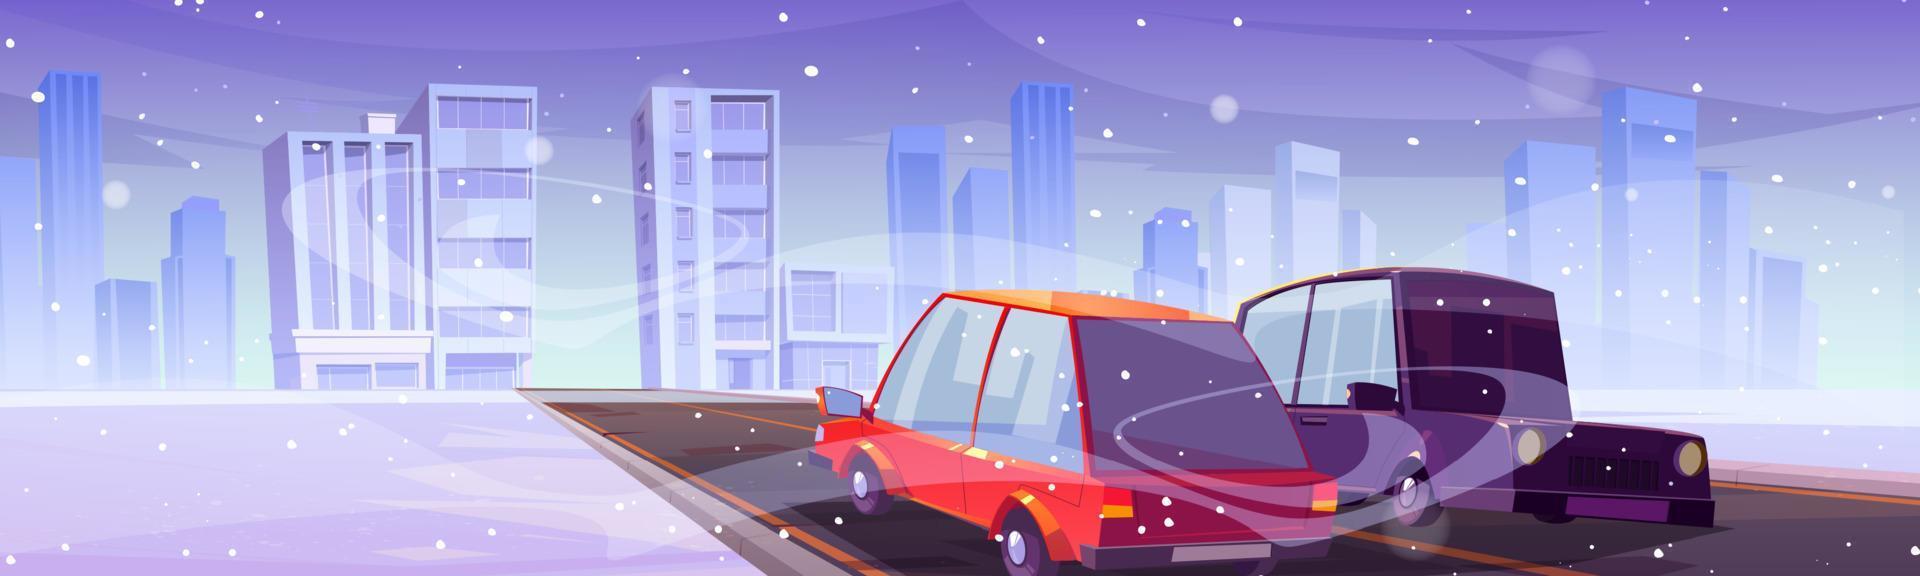 bilar körning på vinter- stad väg med faller snö vektor